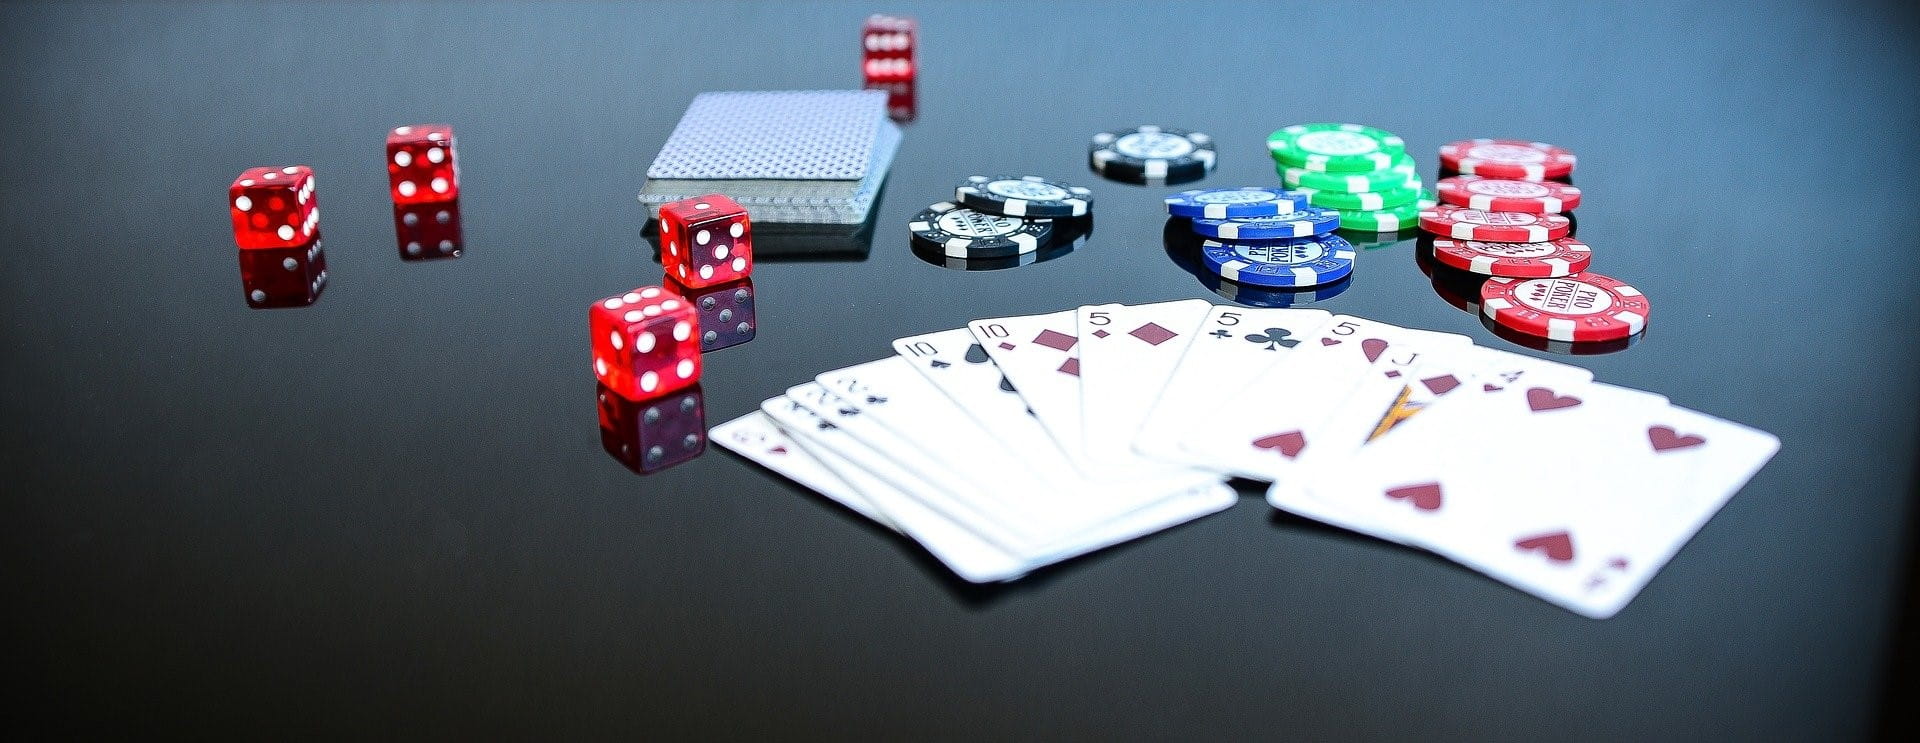 Pokerkarten, Würfel und Chips auf einem Spieltisch.